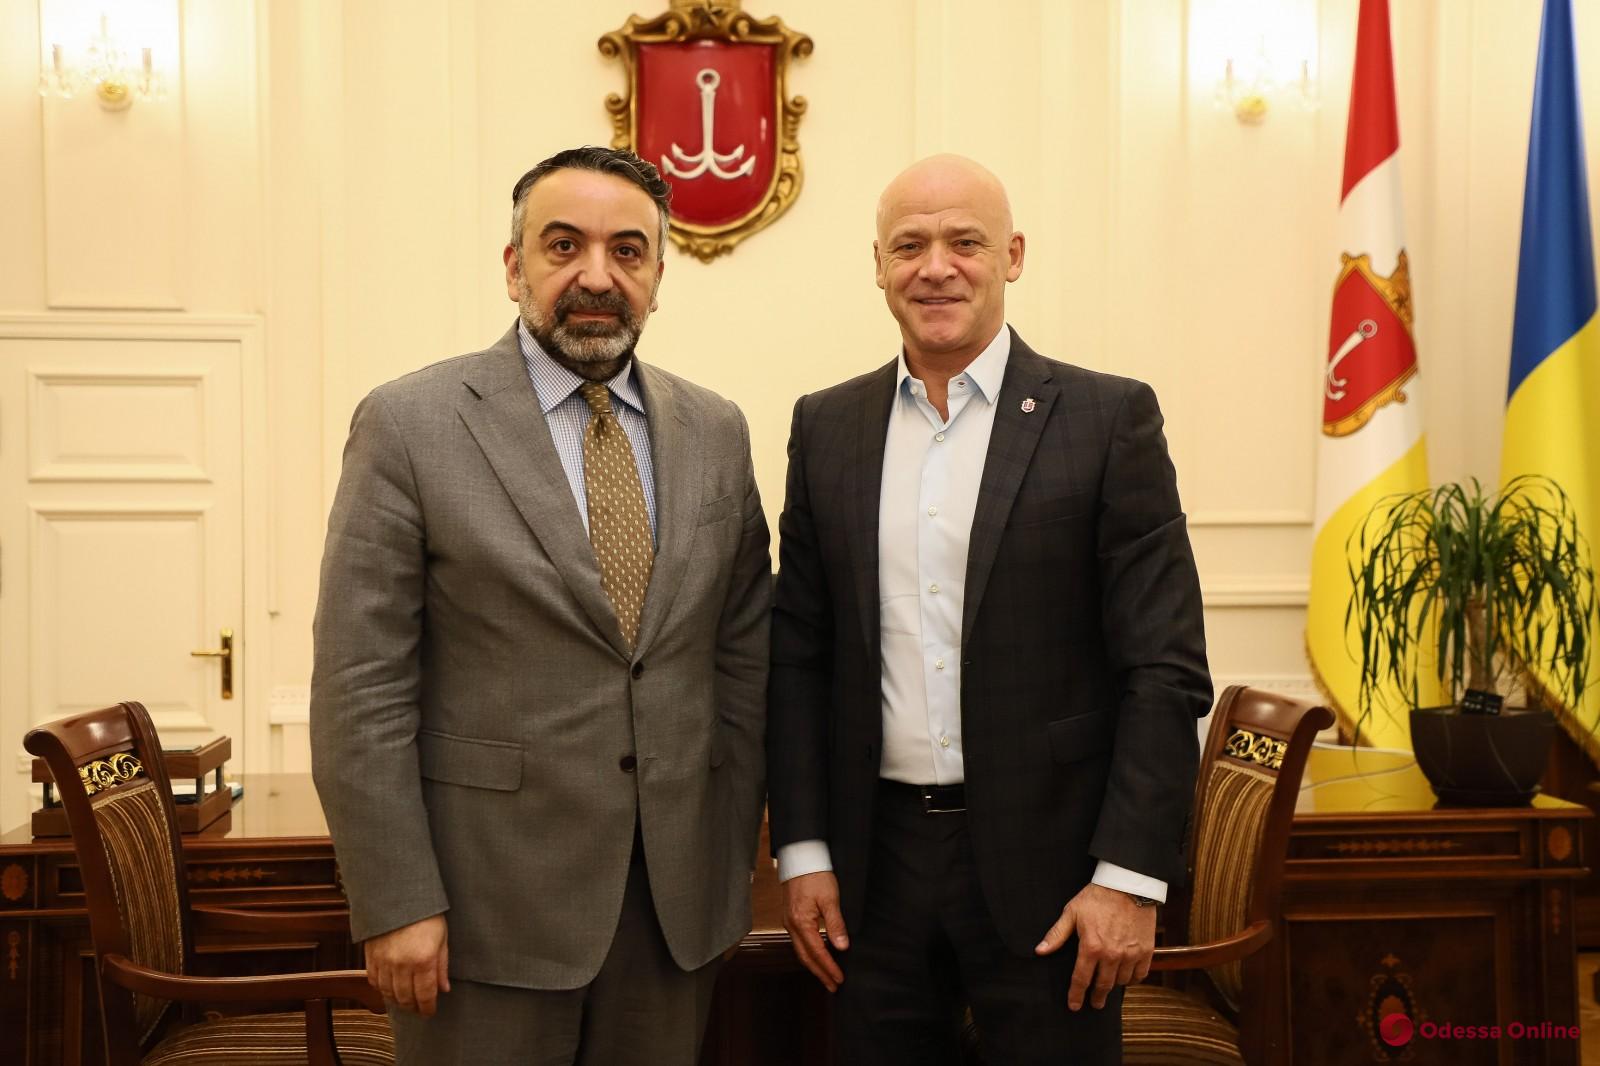 Мэр встретился с новоназначенным Генконсулом Греции в Одессе